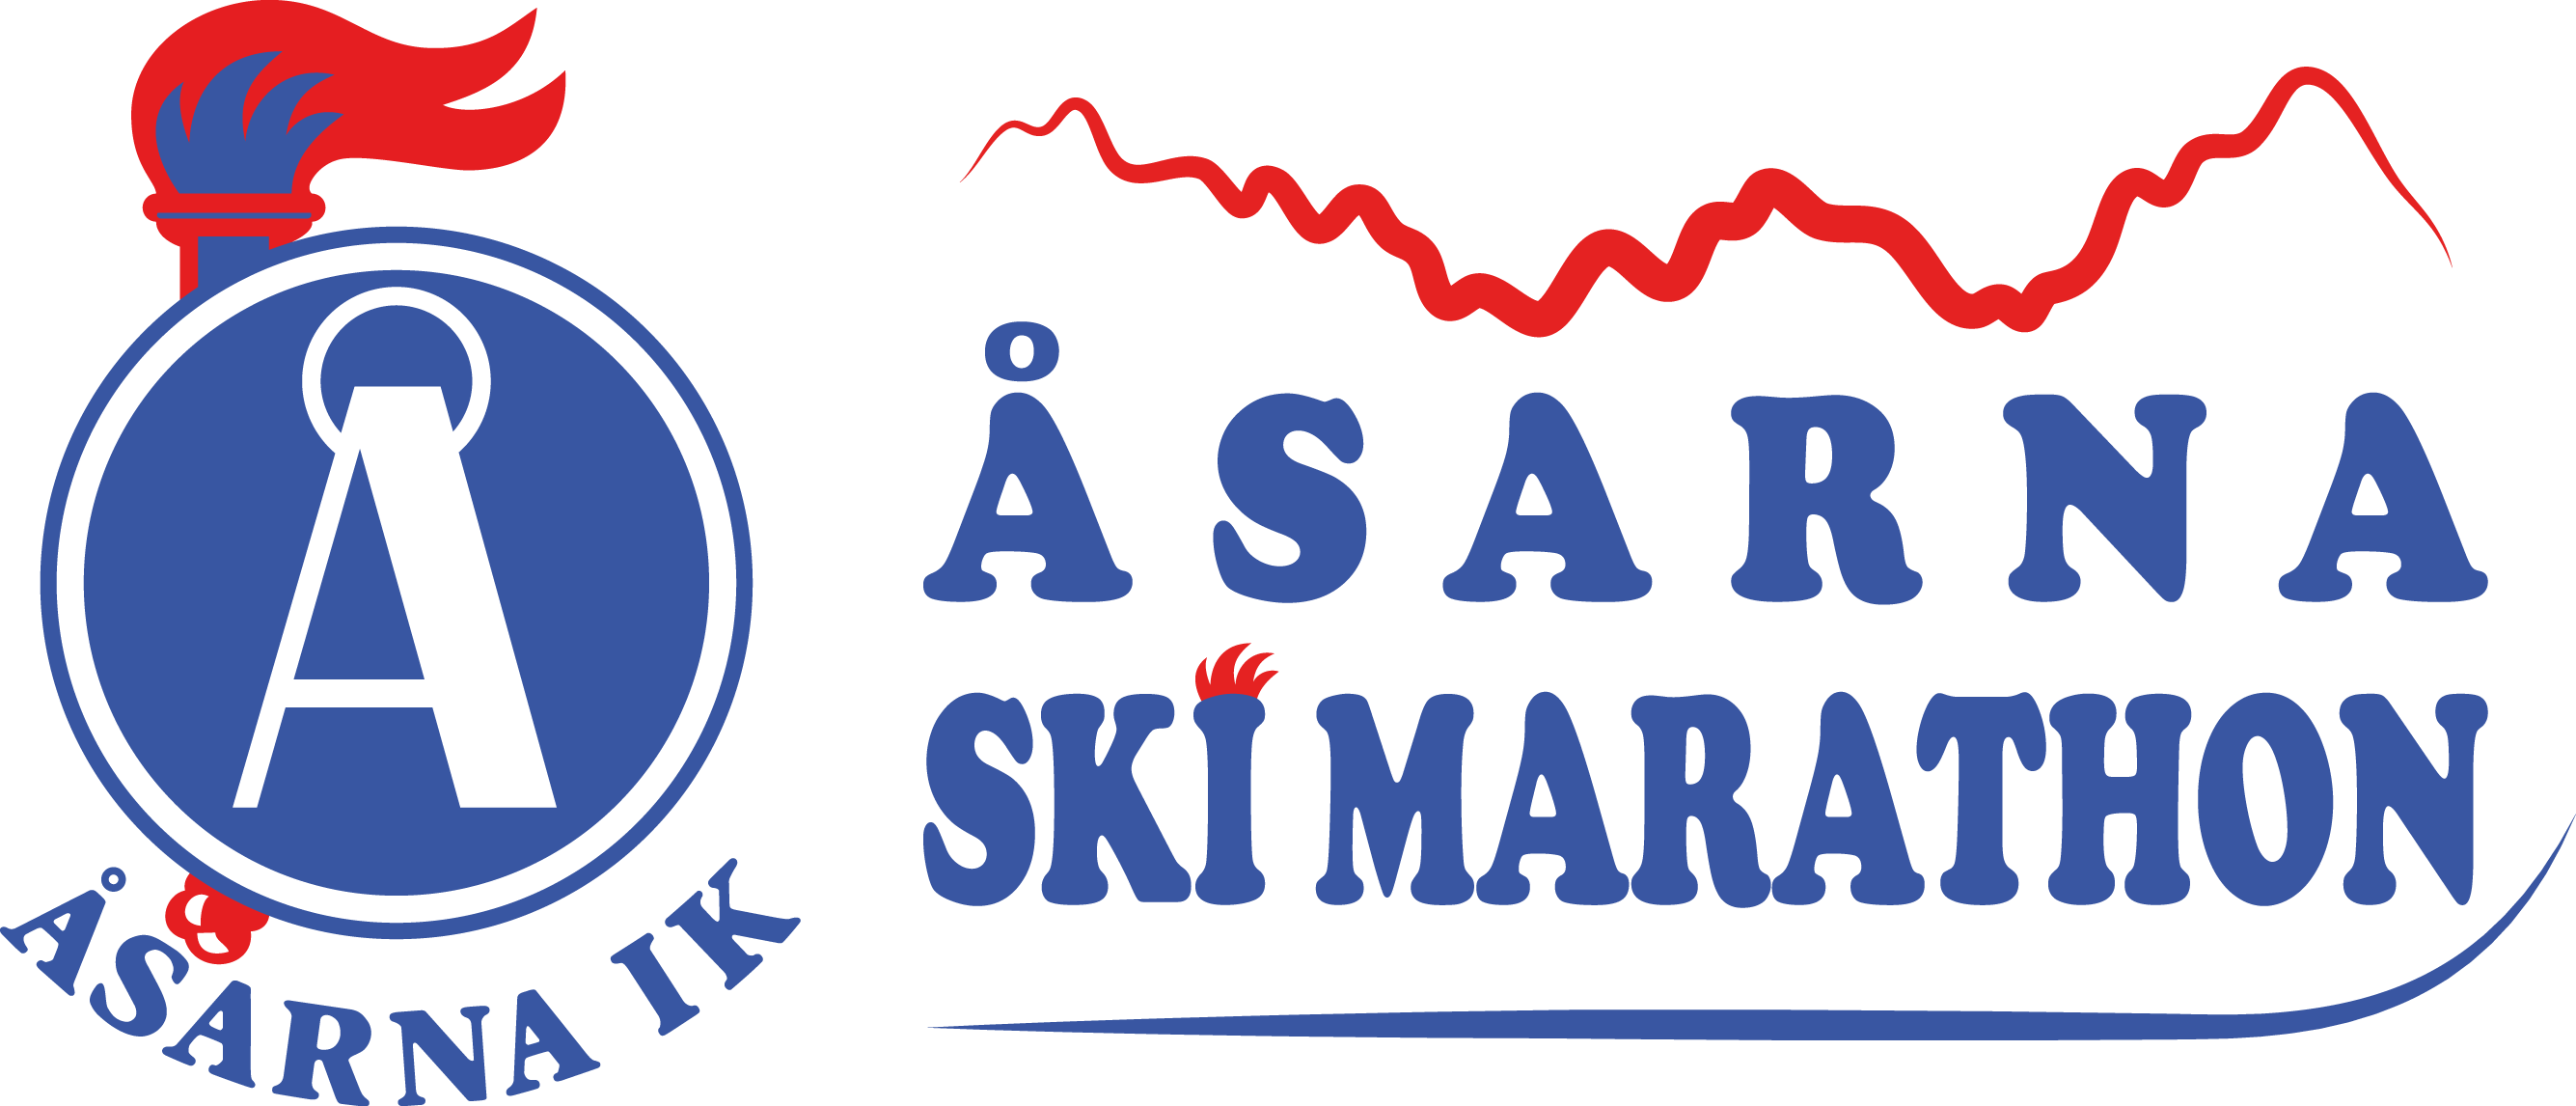 Åsarna Ski Marathon